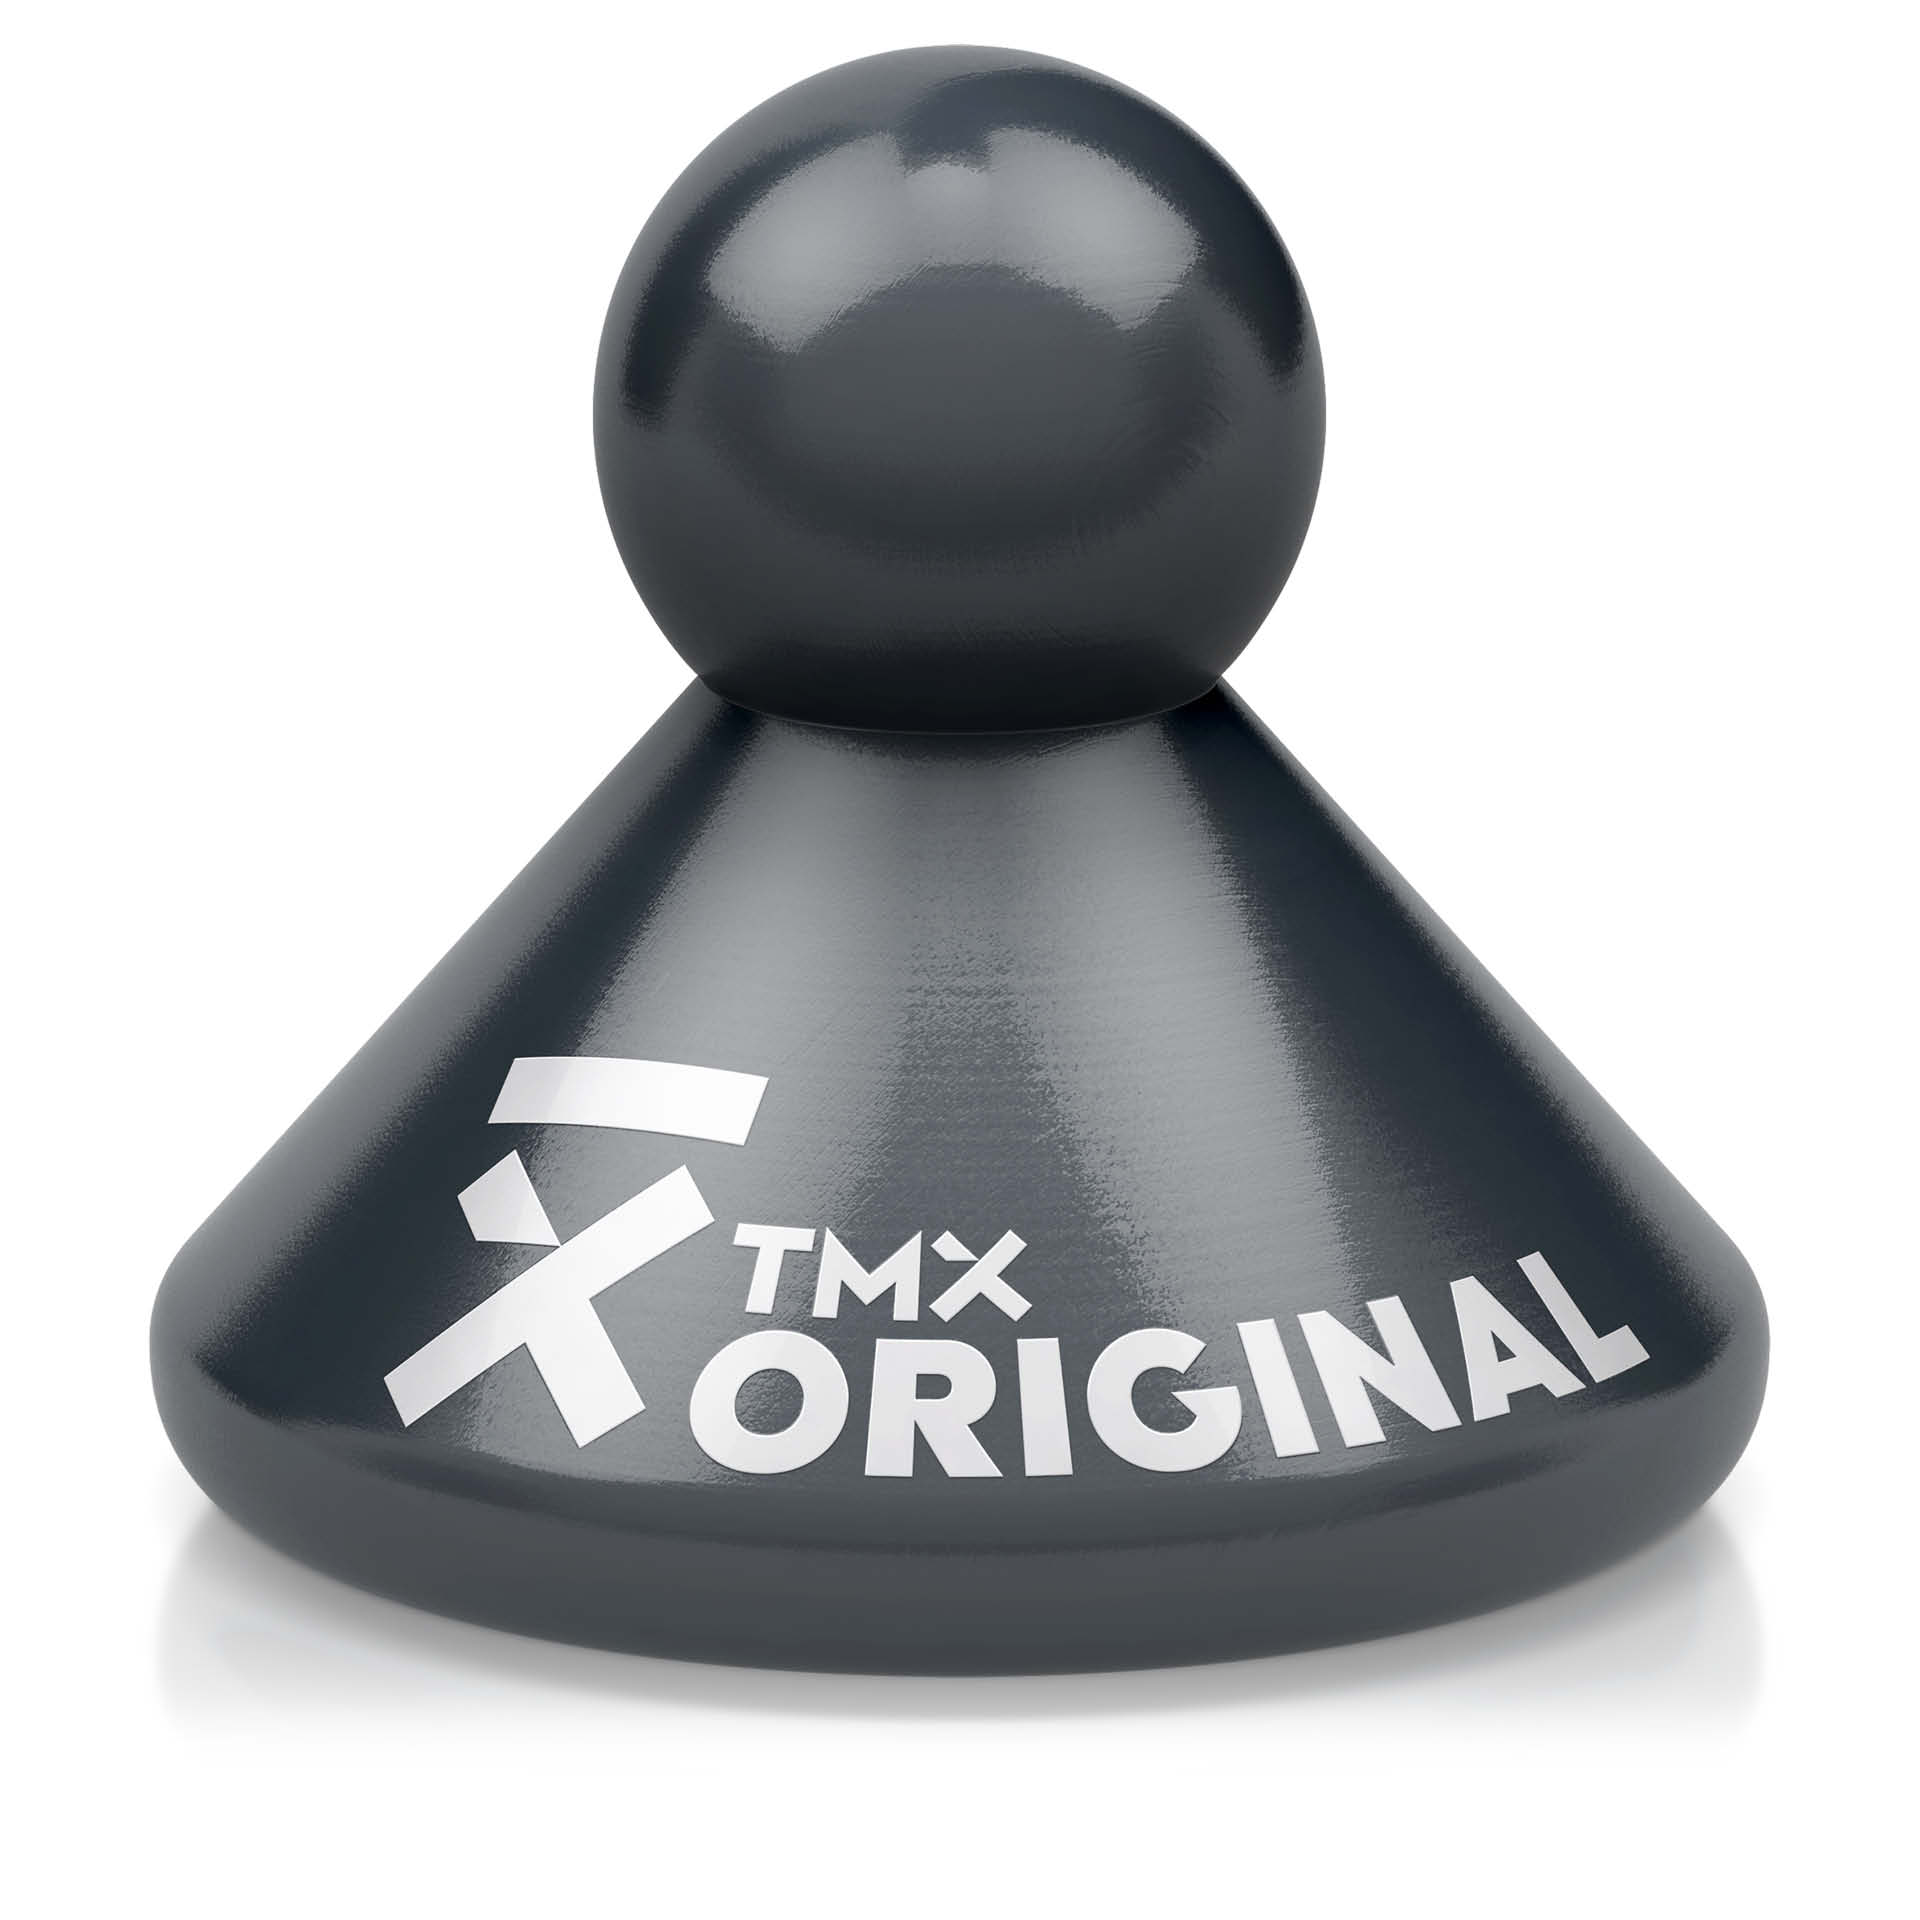 TMX® Original Trigger Anthrazit